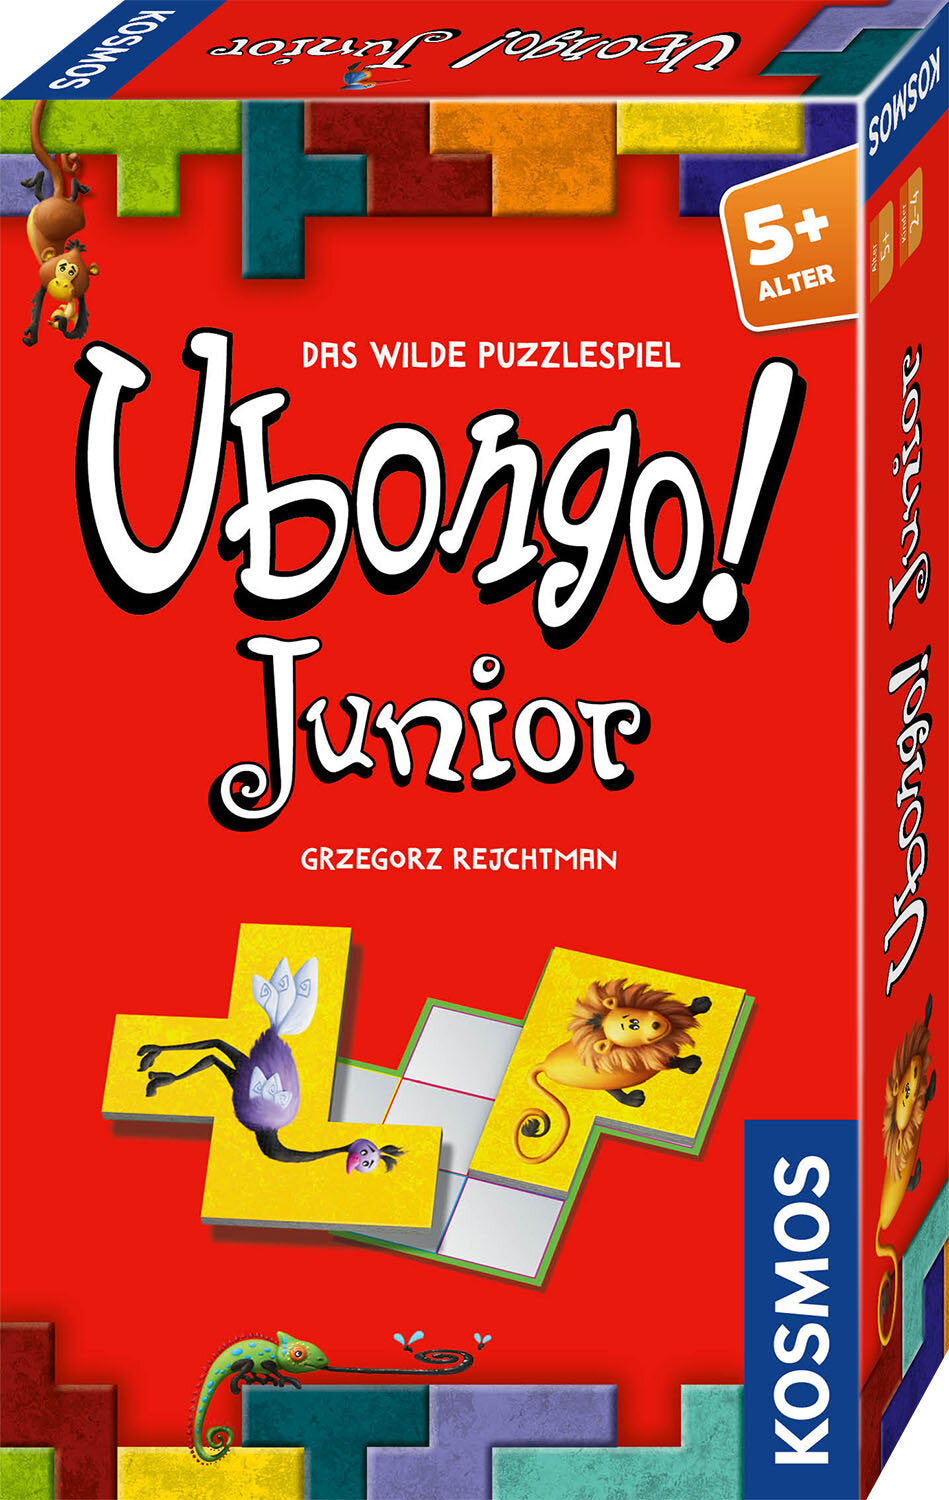 Ubongo Junior - Mitbringspiel